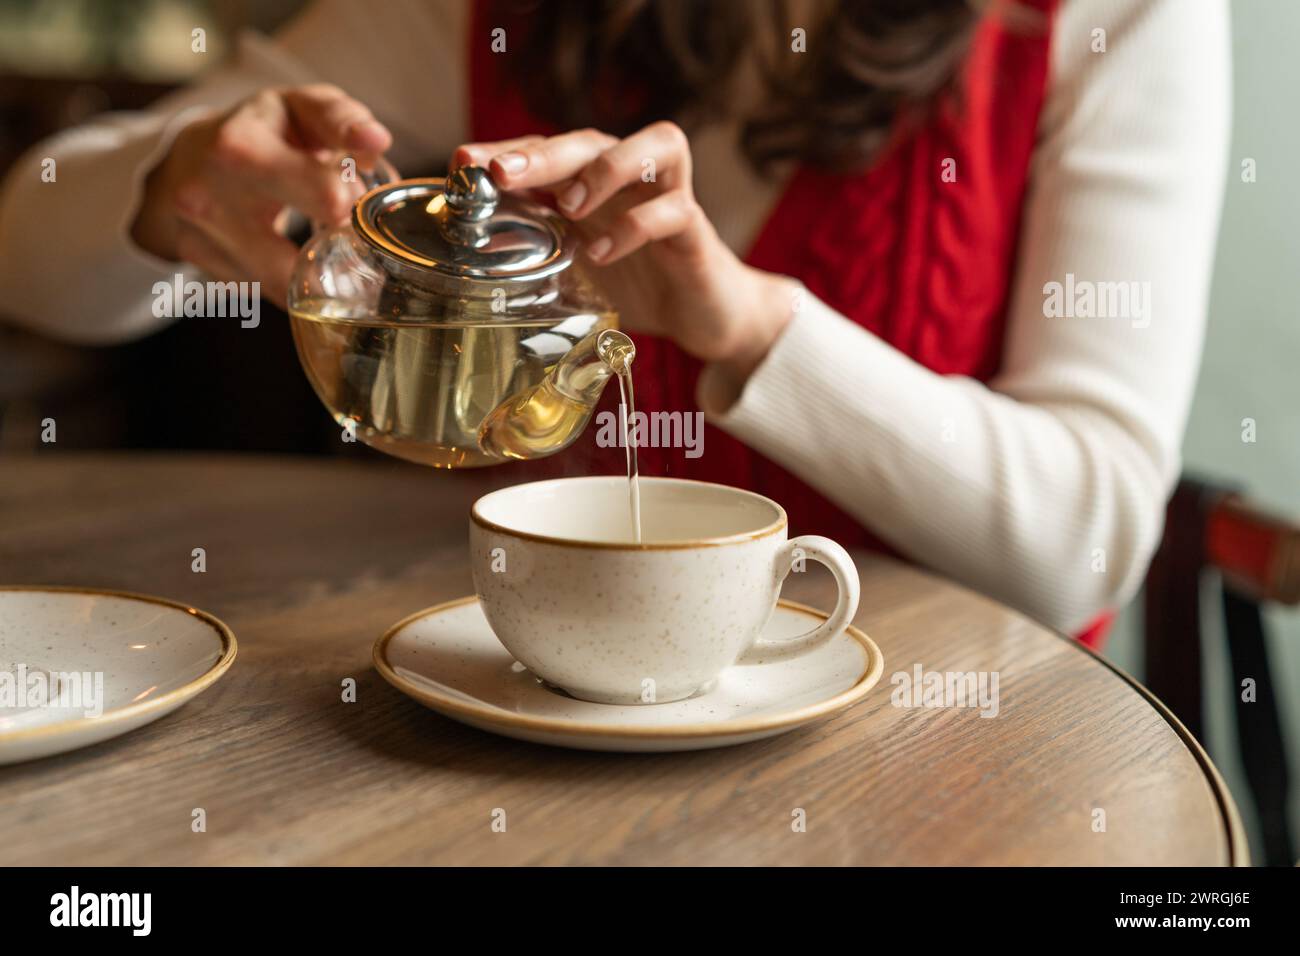 Femme assise à une table versant une tisane dans une tasse à thé Banque D'Images